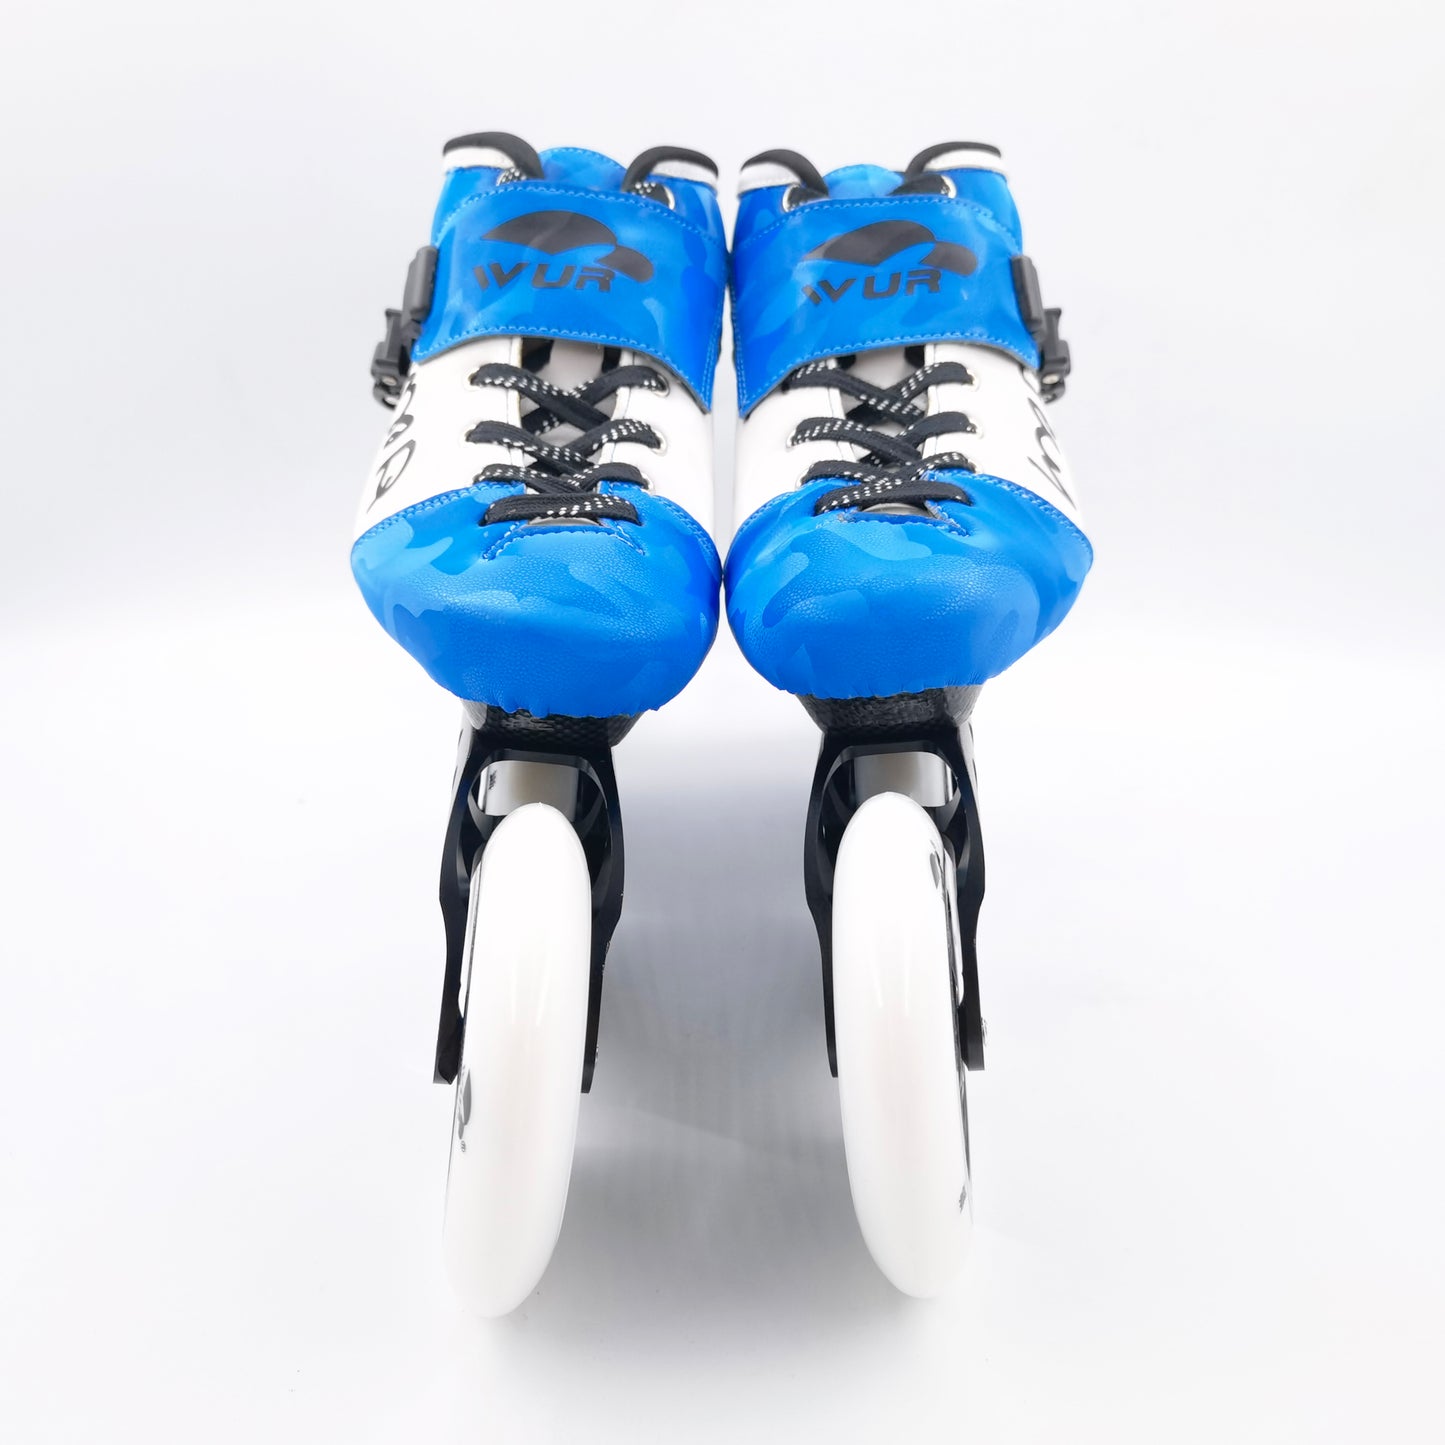 WUR skates inline speed skates carbon fiber  Blue ZQ02 4*110mm in stock